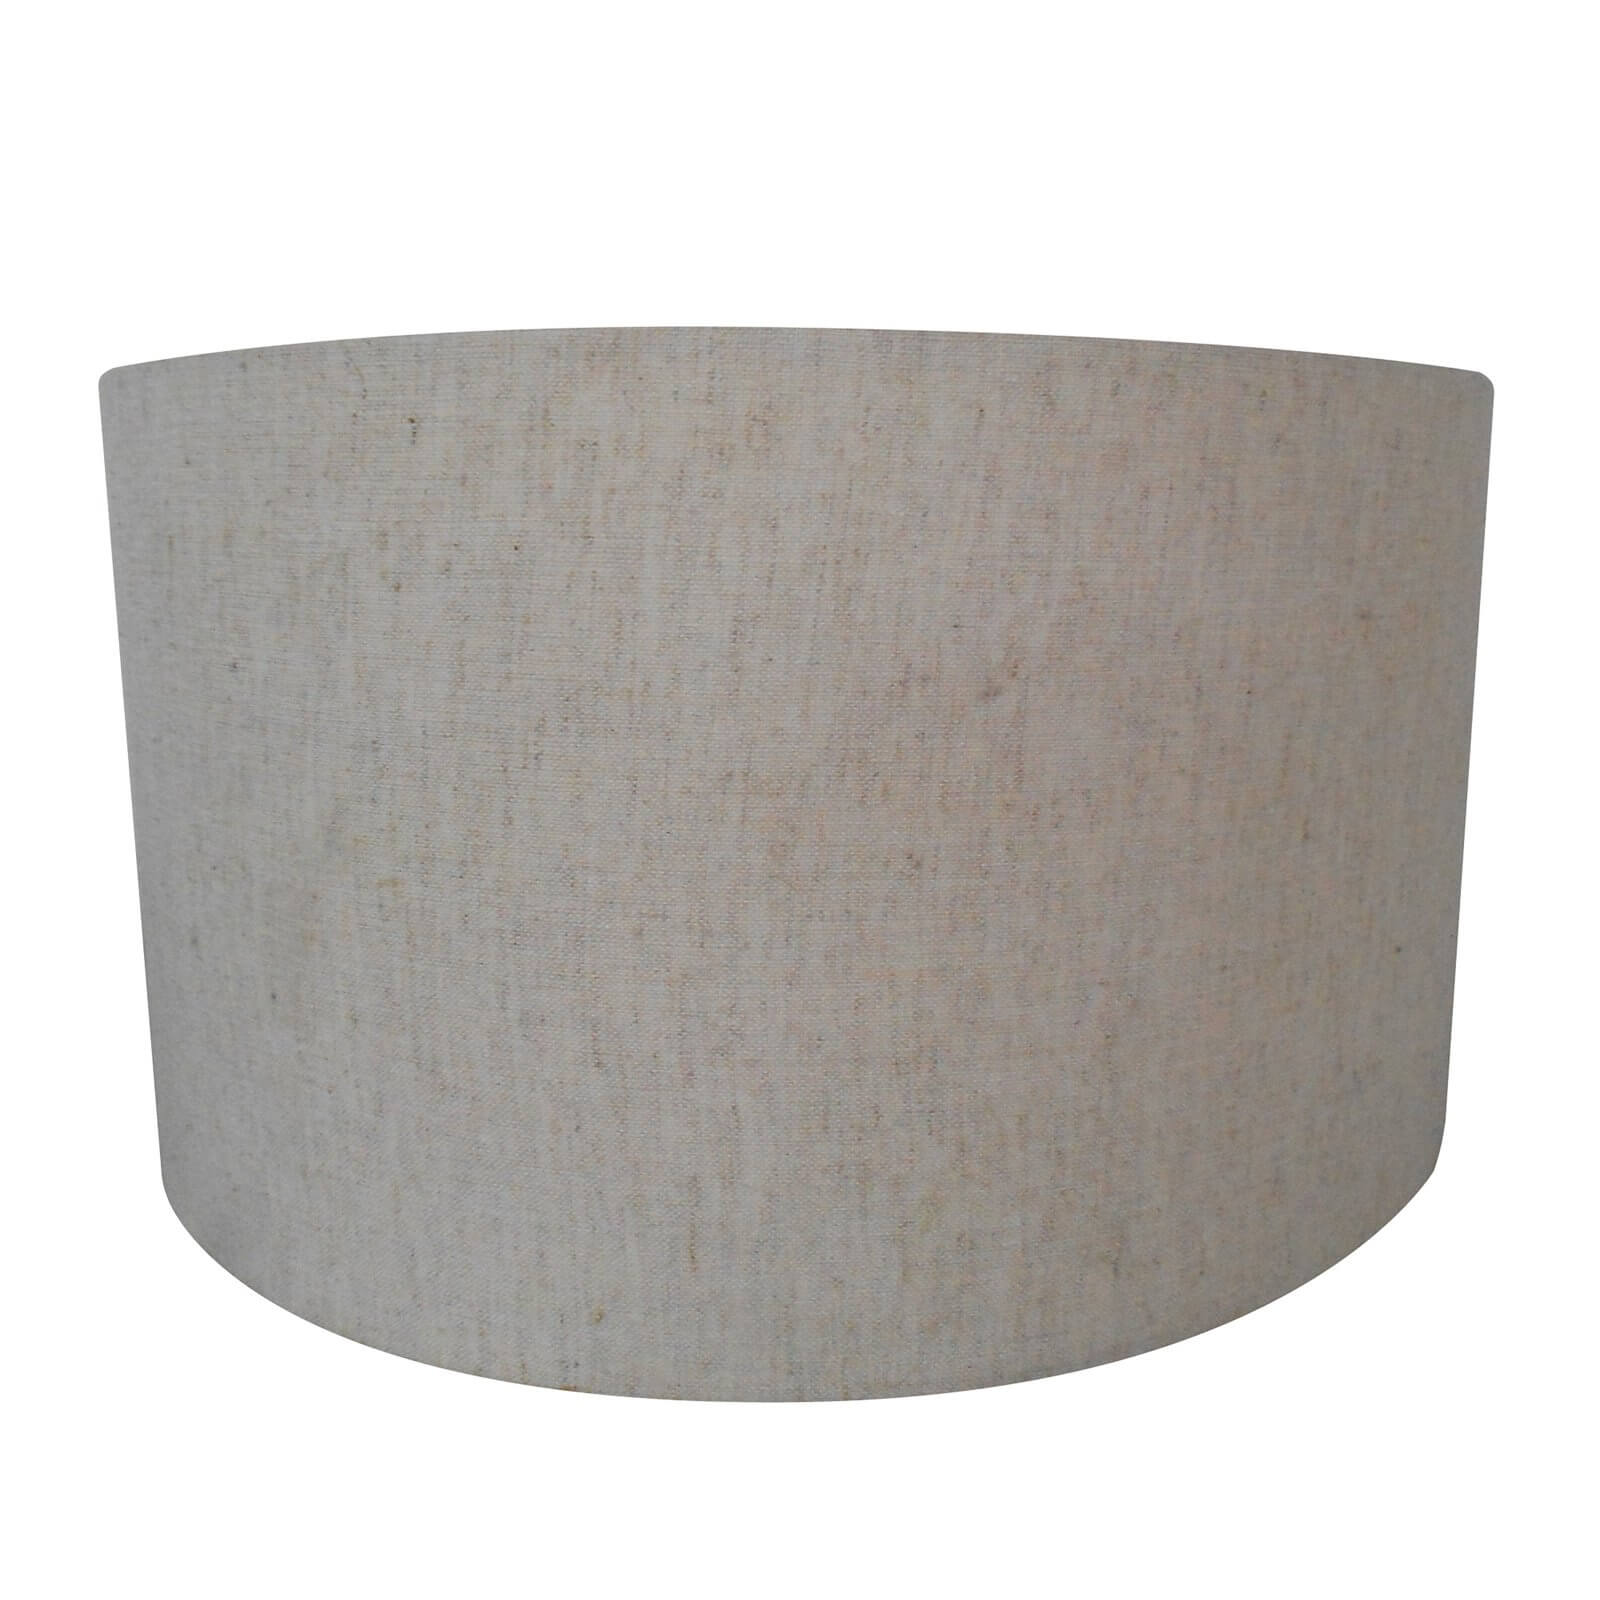 Drum Lamp Shade with Diffuser - Cream - 40cm